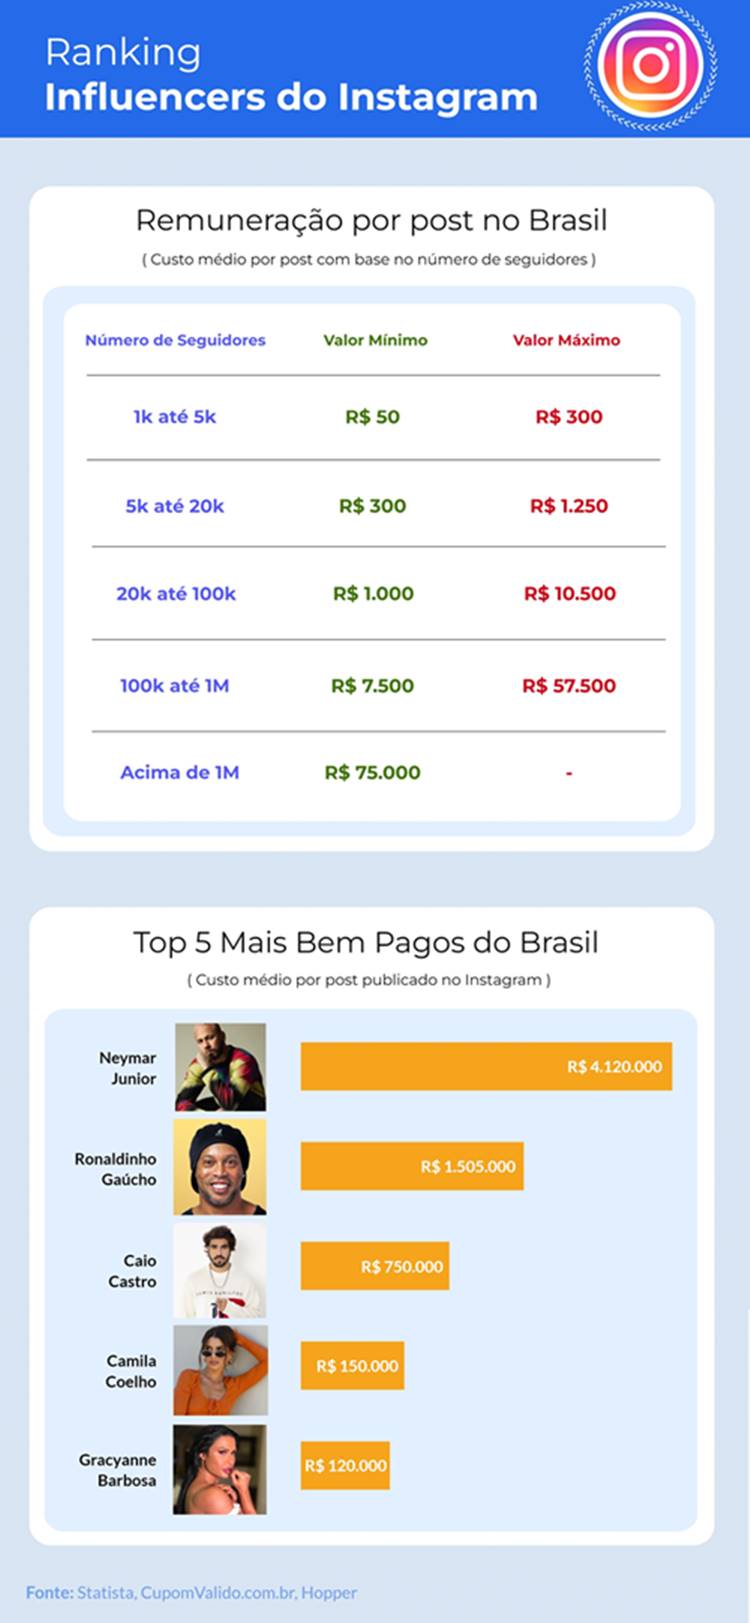 Foto com dados da remuneração por post no Brasil.